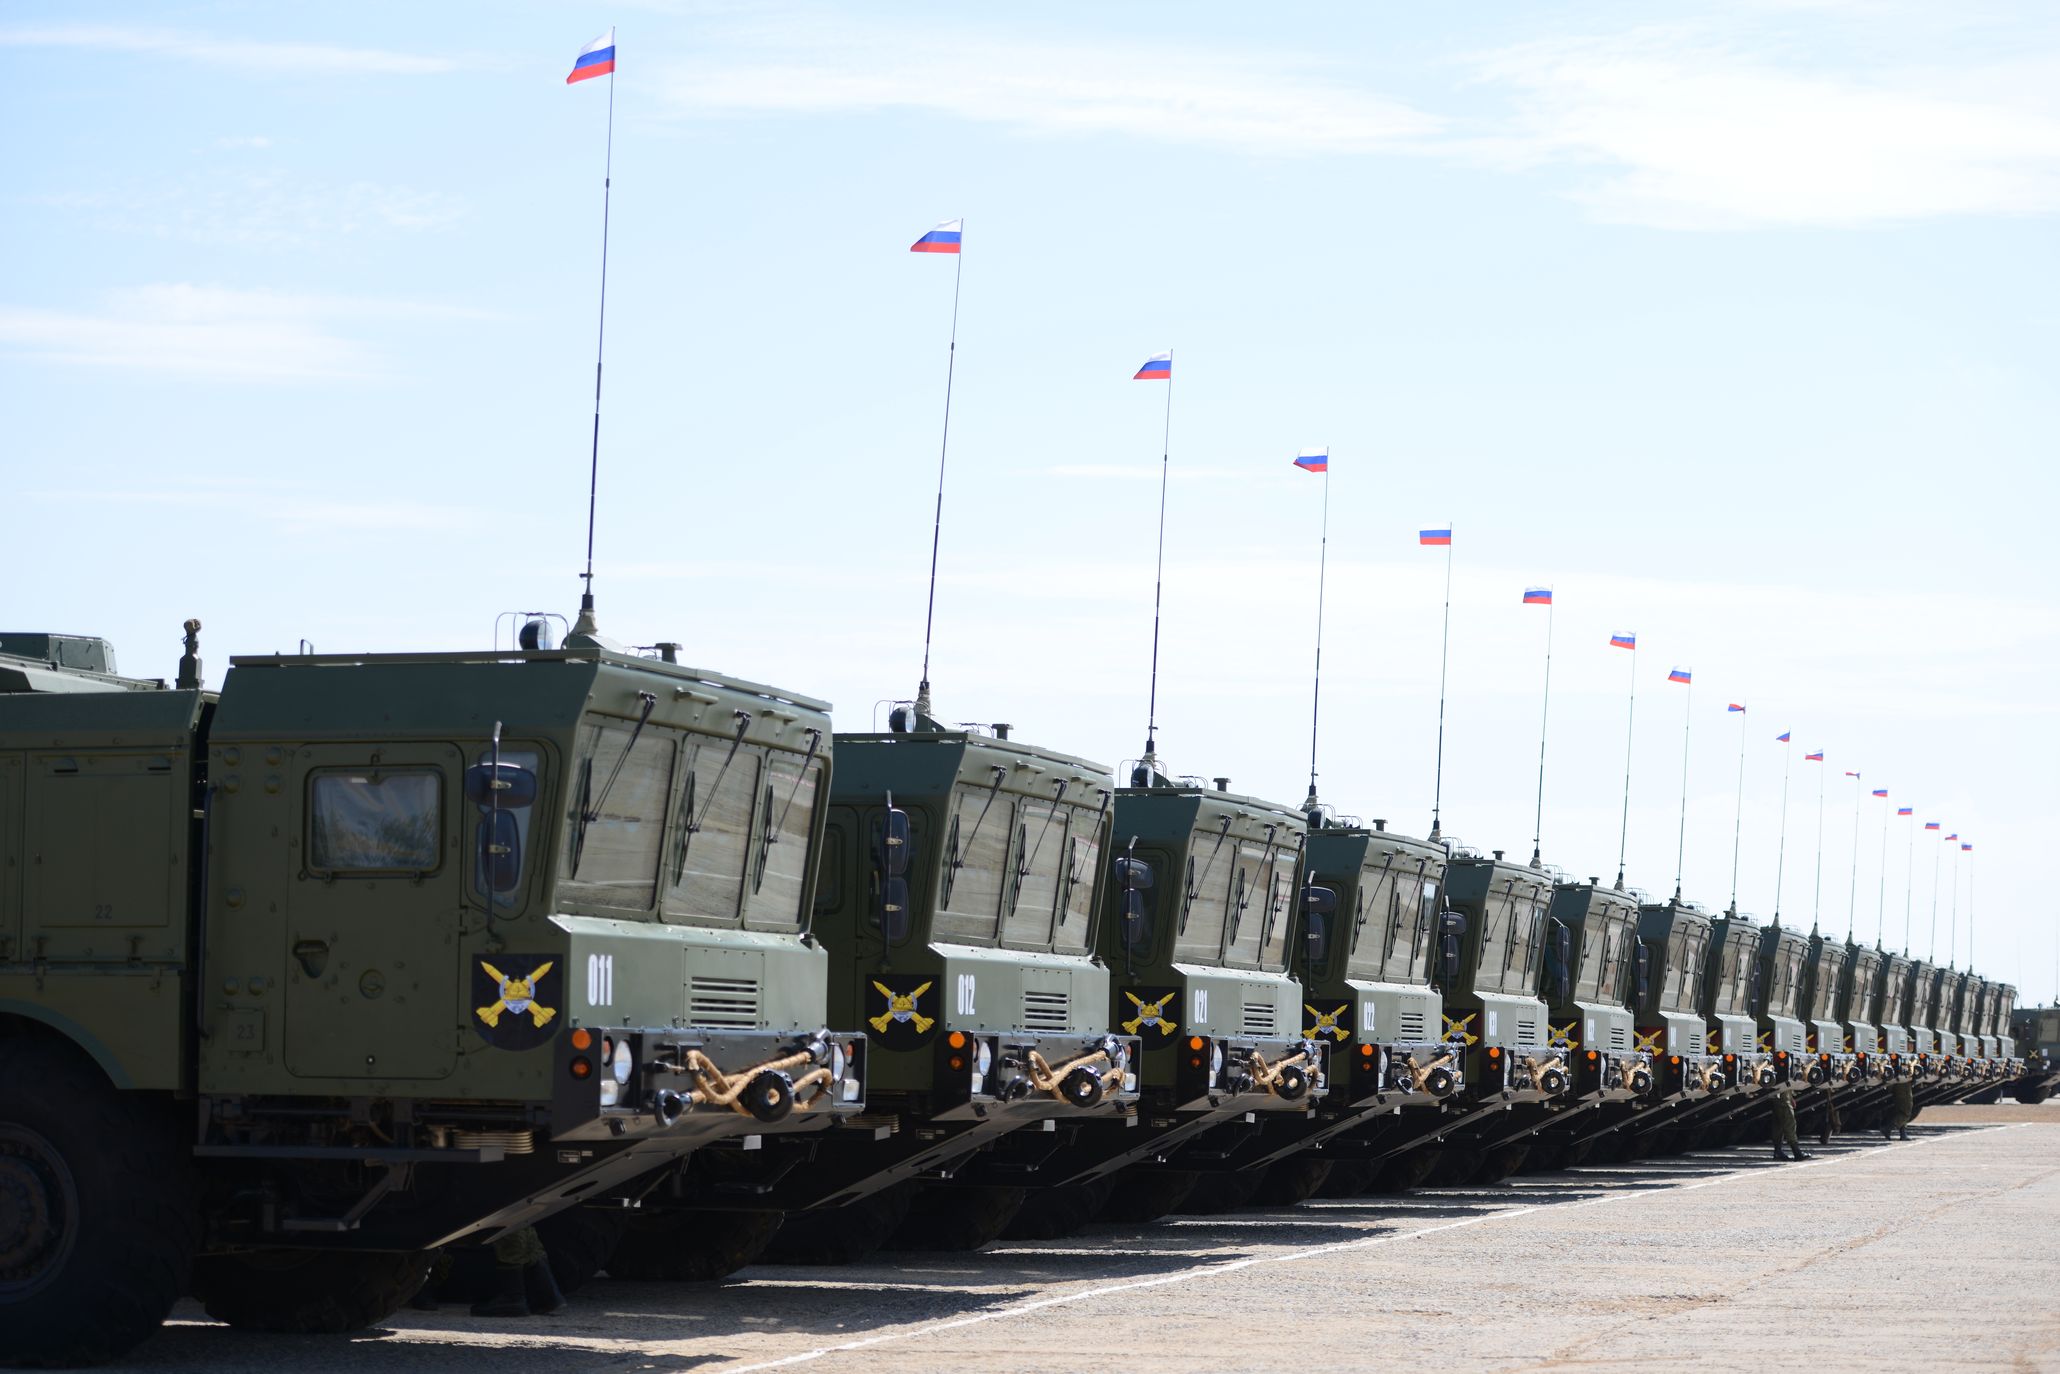 Российская армия получила очередной комплект оперативно-тактического ракетного комплекса "Искандер-М" Подробнее на ТАСС: http://tass.ru/armiya-i-opk/3410494